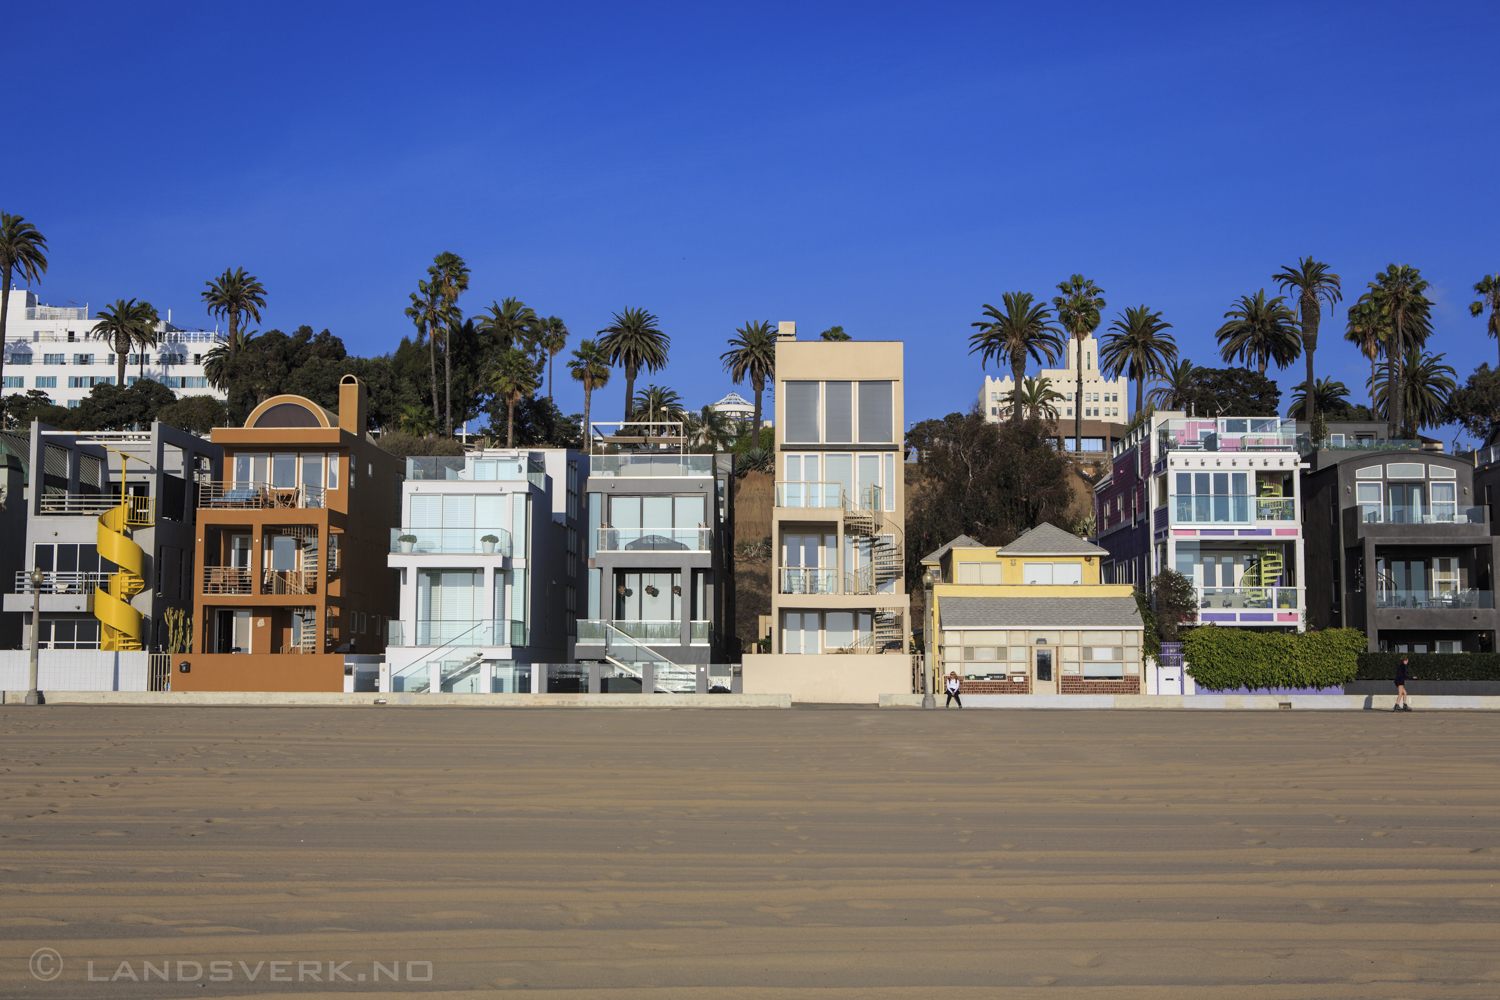 Santa Monica, California. 

(Canon EOS 5D Mark III / Canon EF 24-70mm f/2.8 L USM)